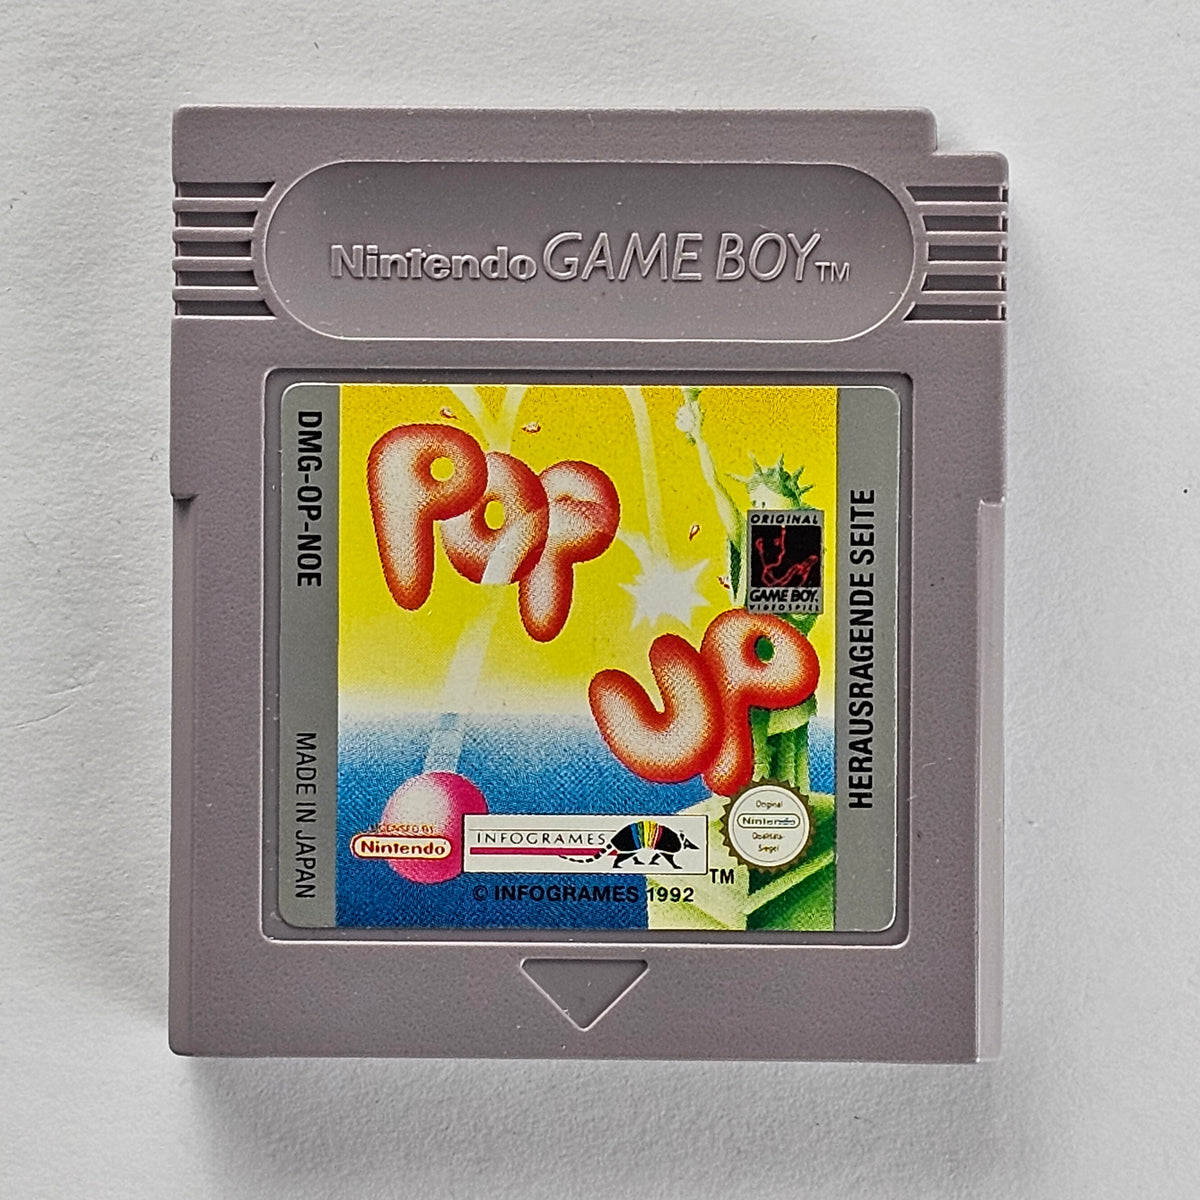 Pop up Game Boy [GB]